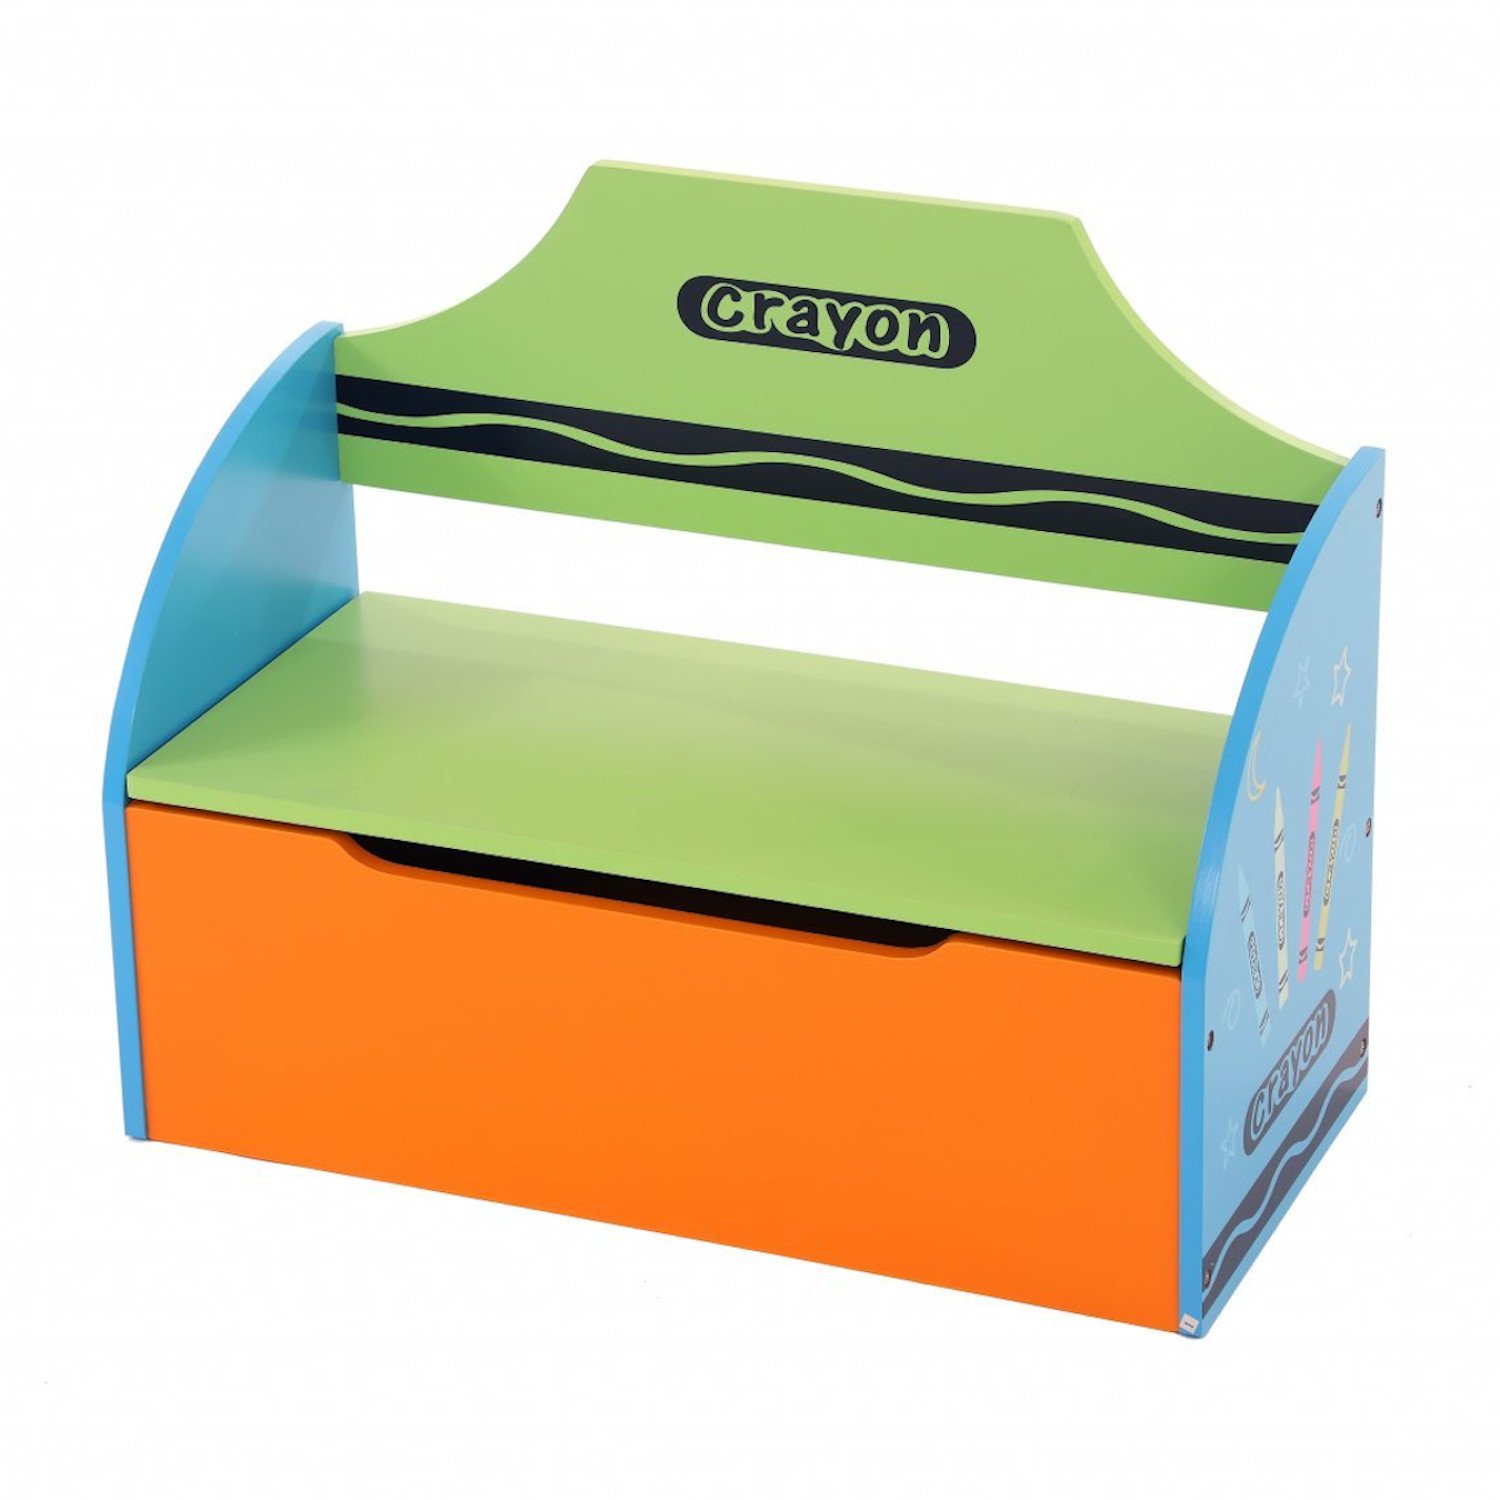 Childrens Wooden Crayon Toy Storage Unit Box Bench